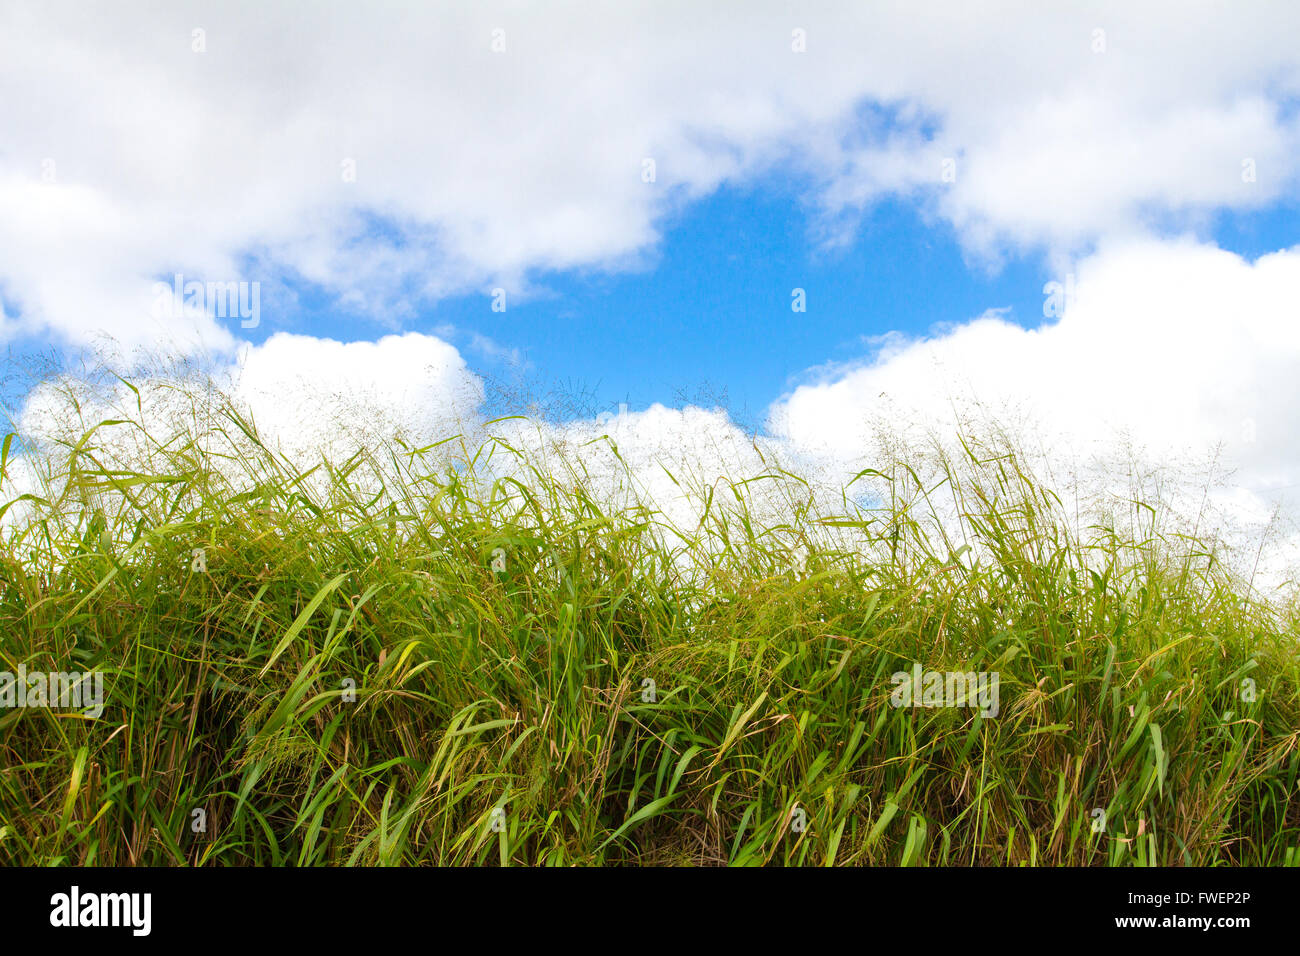 Questo tropicale erba verde sull'isola di Oahu Hawaii è fotografato contro un luminoso blu cielo con alcuni puffy nuvole bianche. Foto Stock